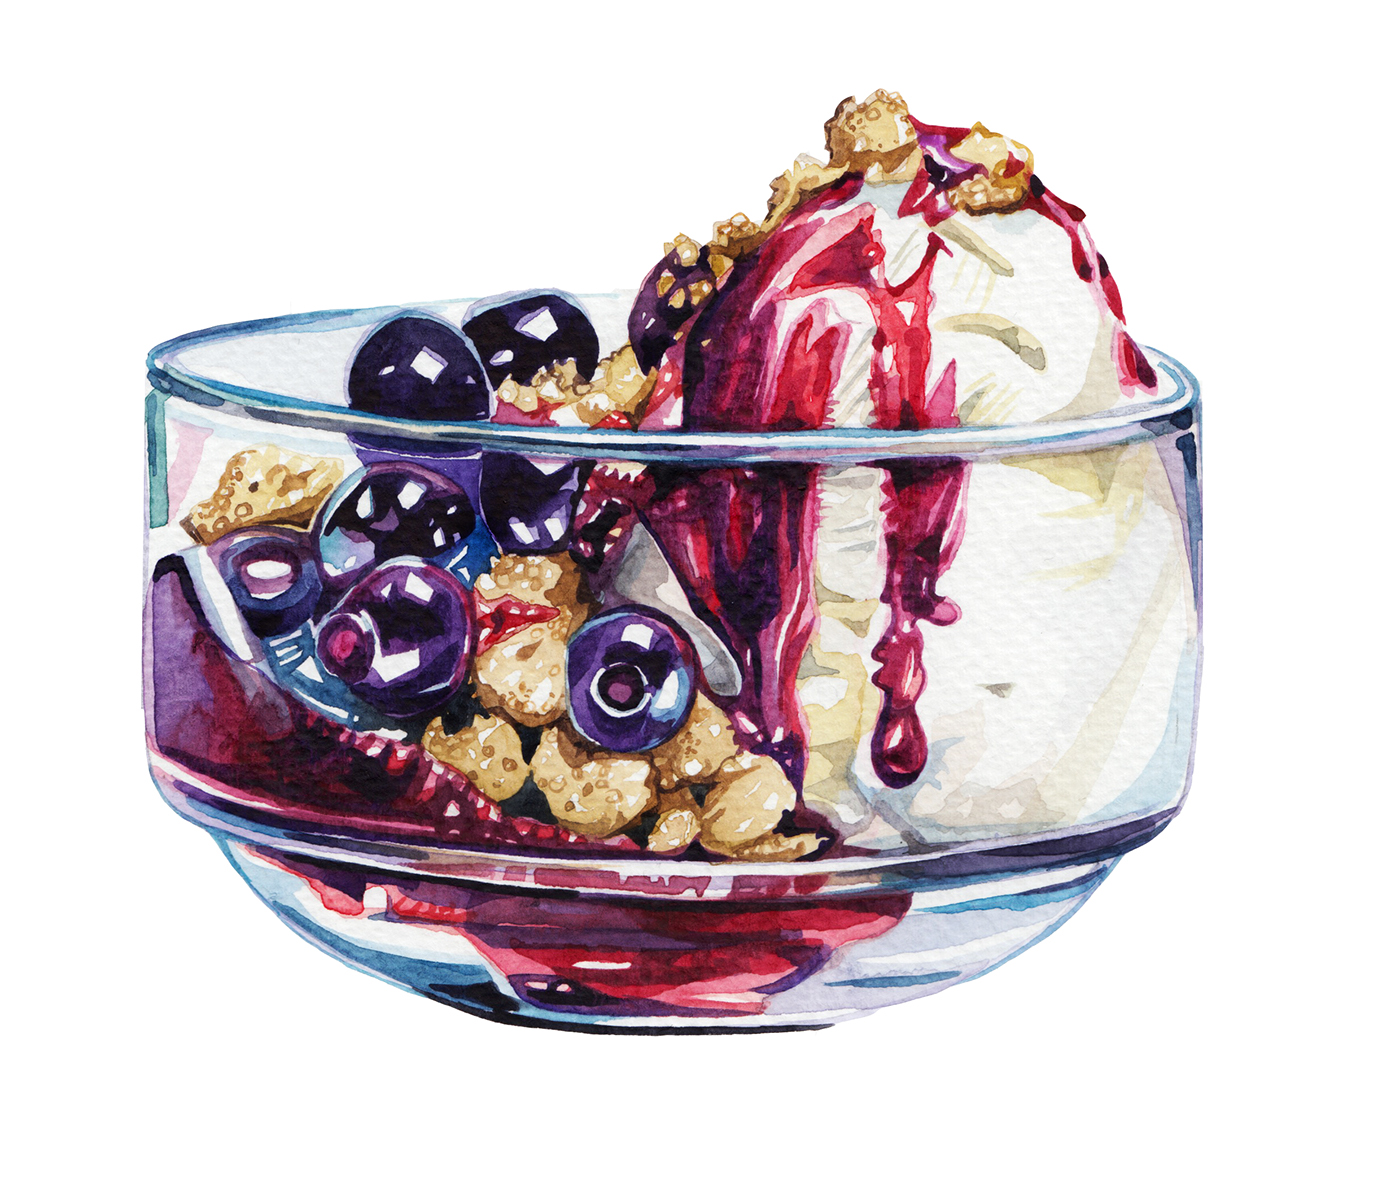 Watercolours watercolour Illustrator editorial illustrator food illustrator desserts